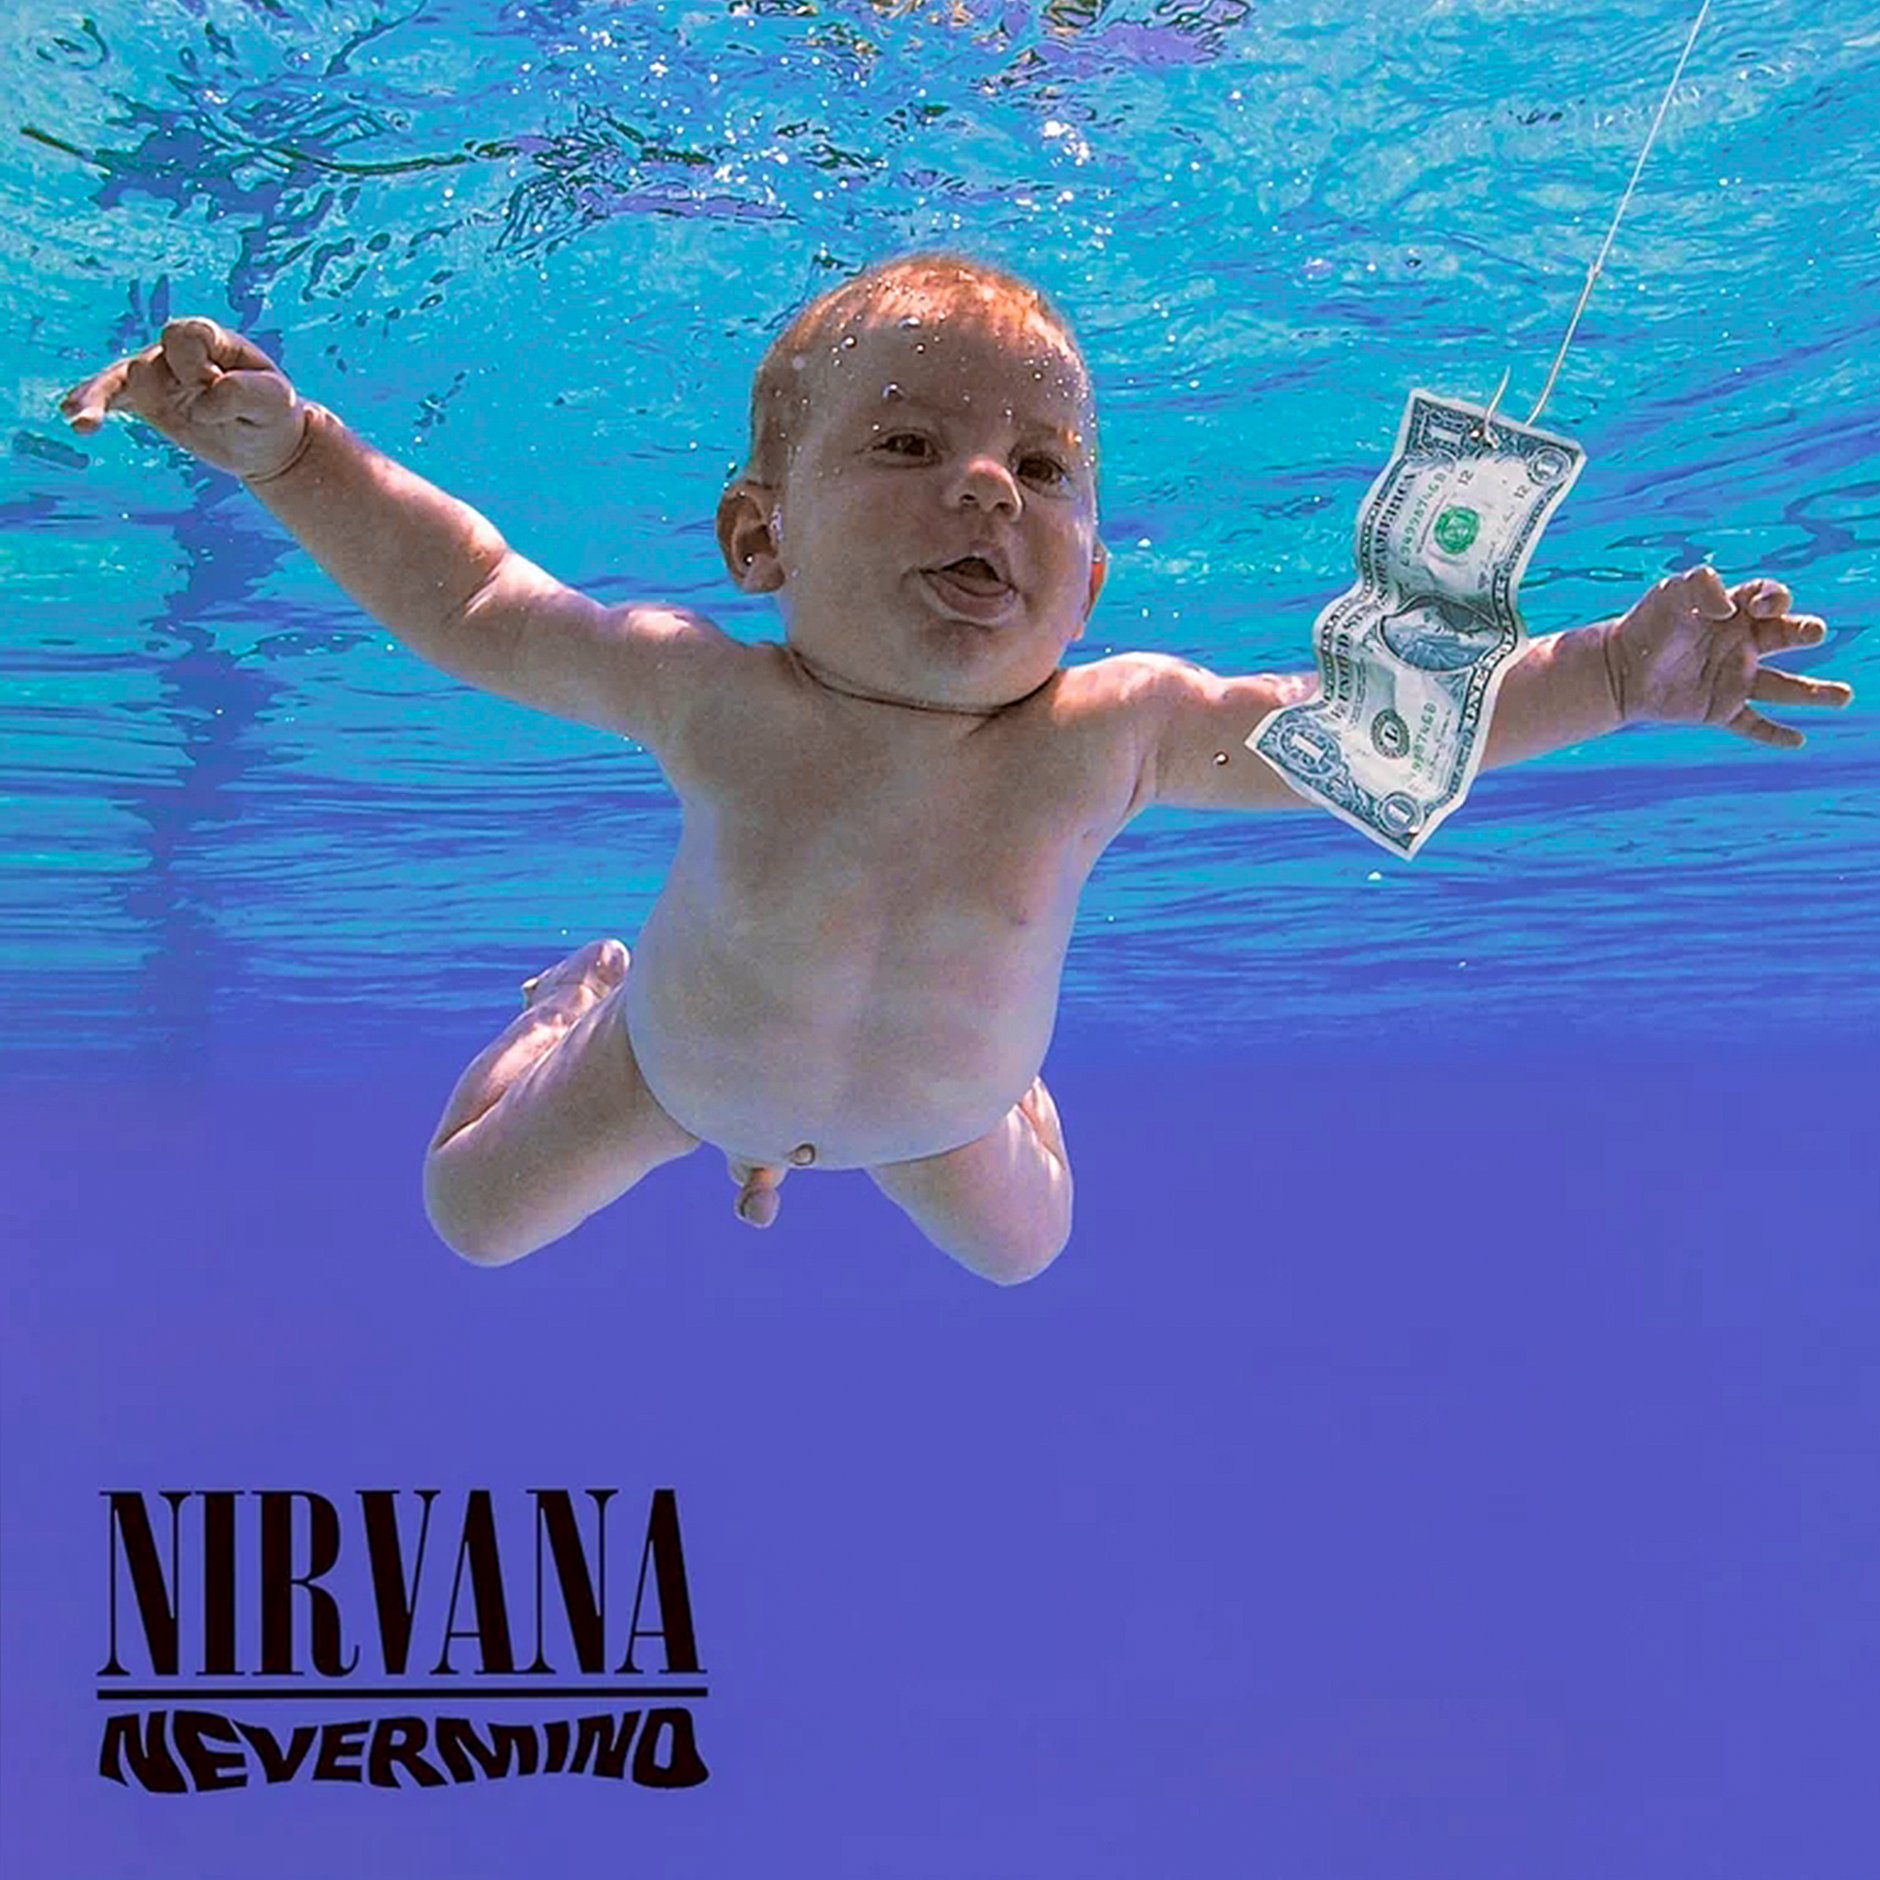 Nirvana on a plain